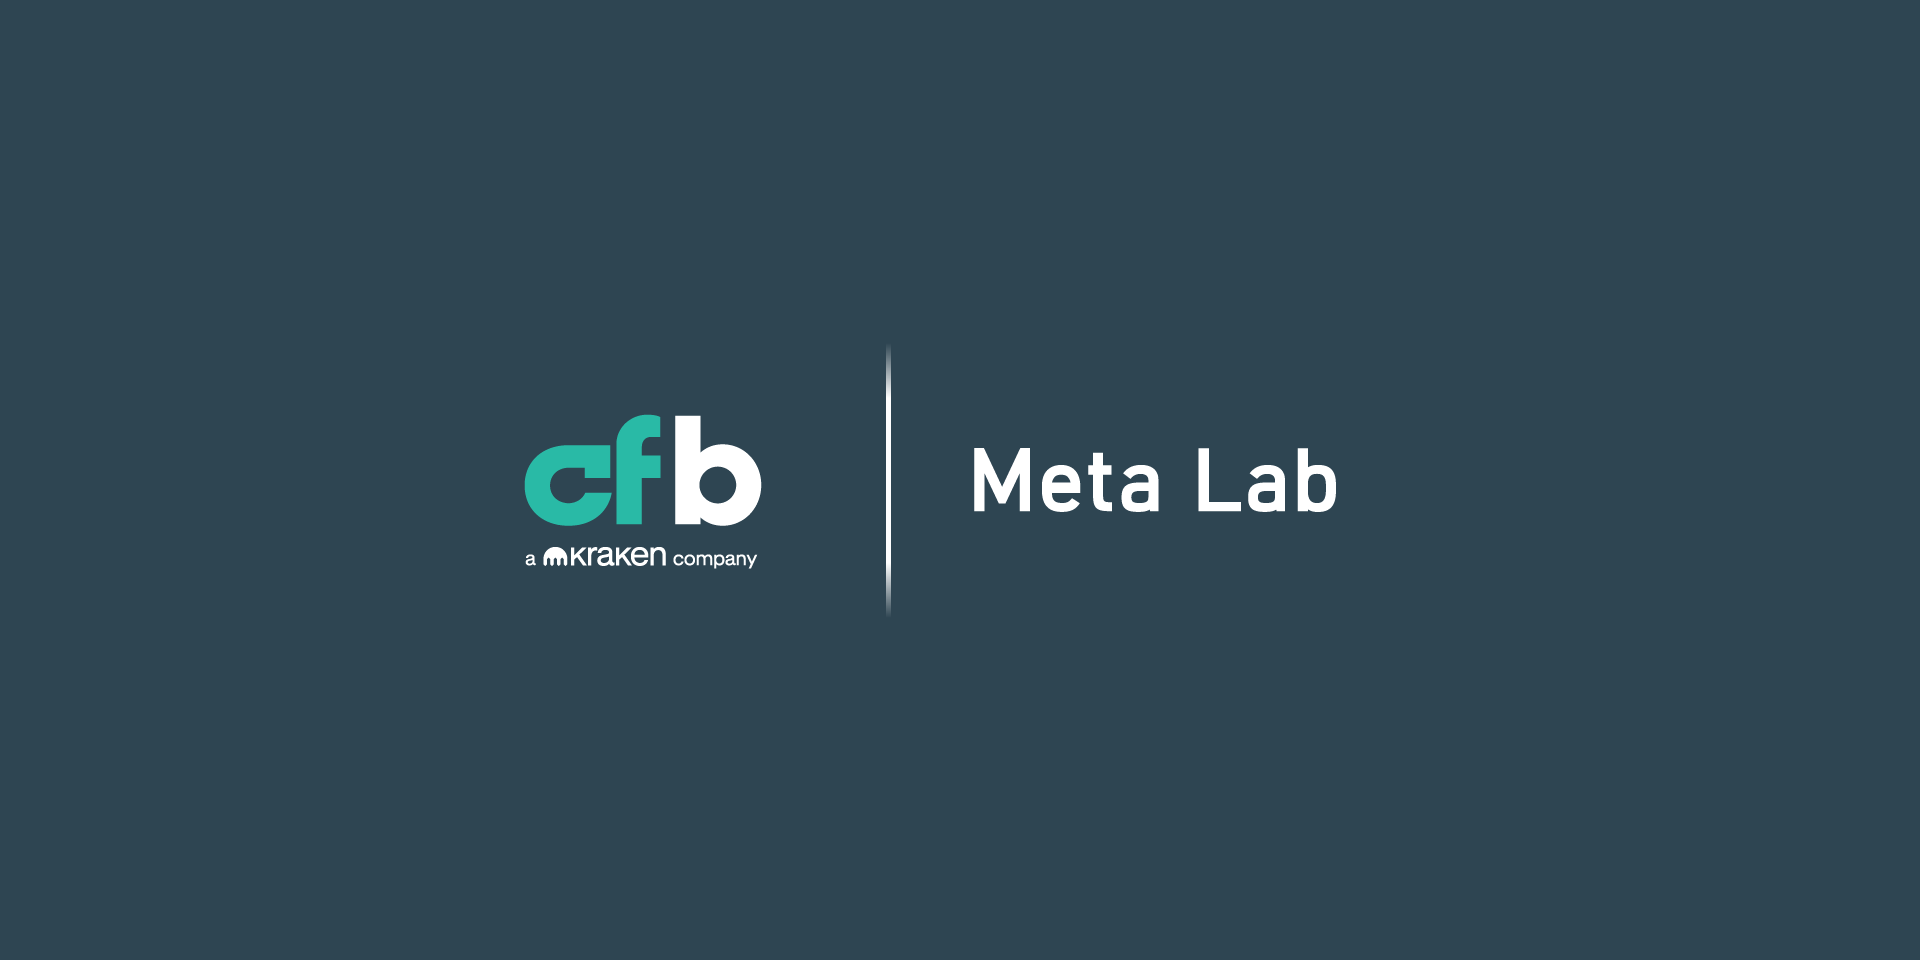 CF Meta Lab Index Family Reconstitution Announcement